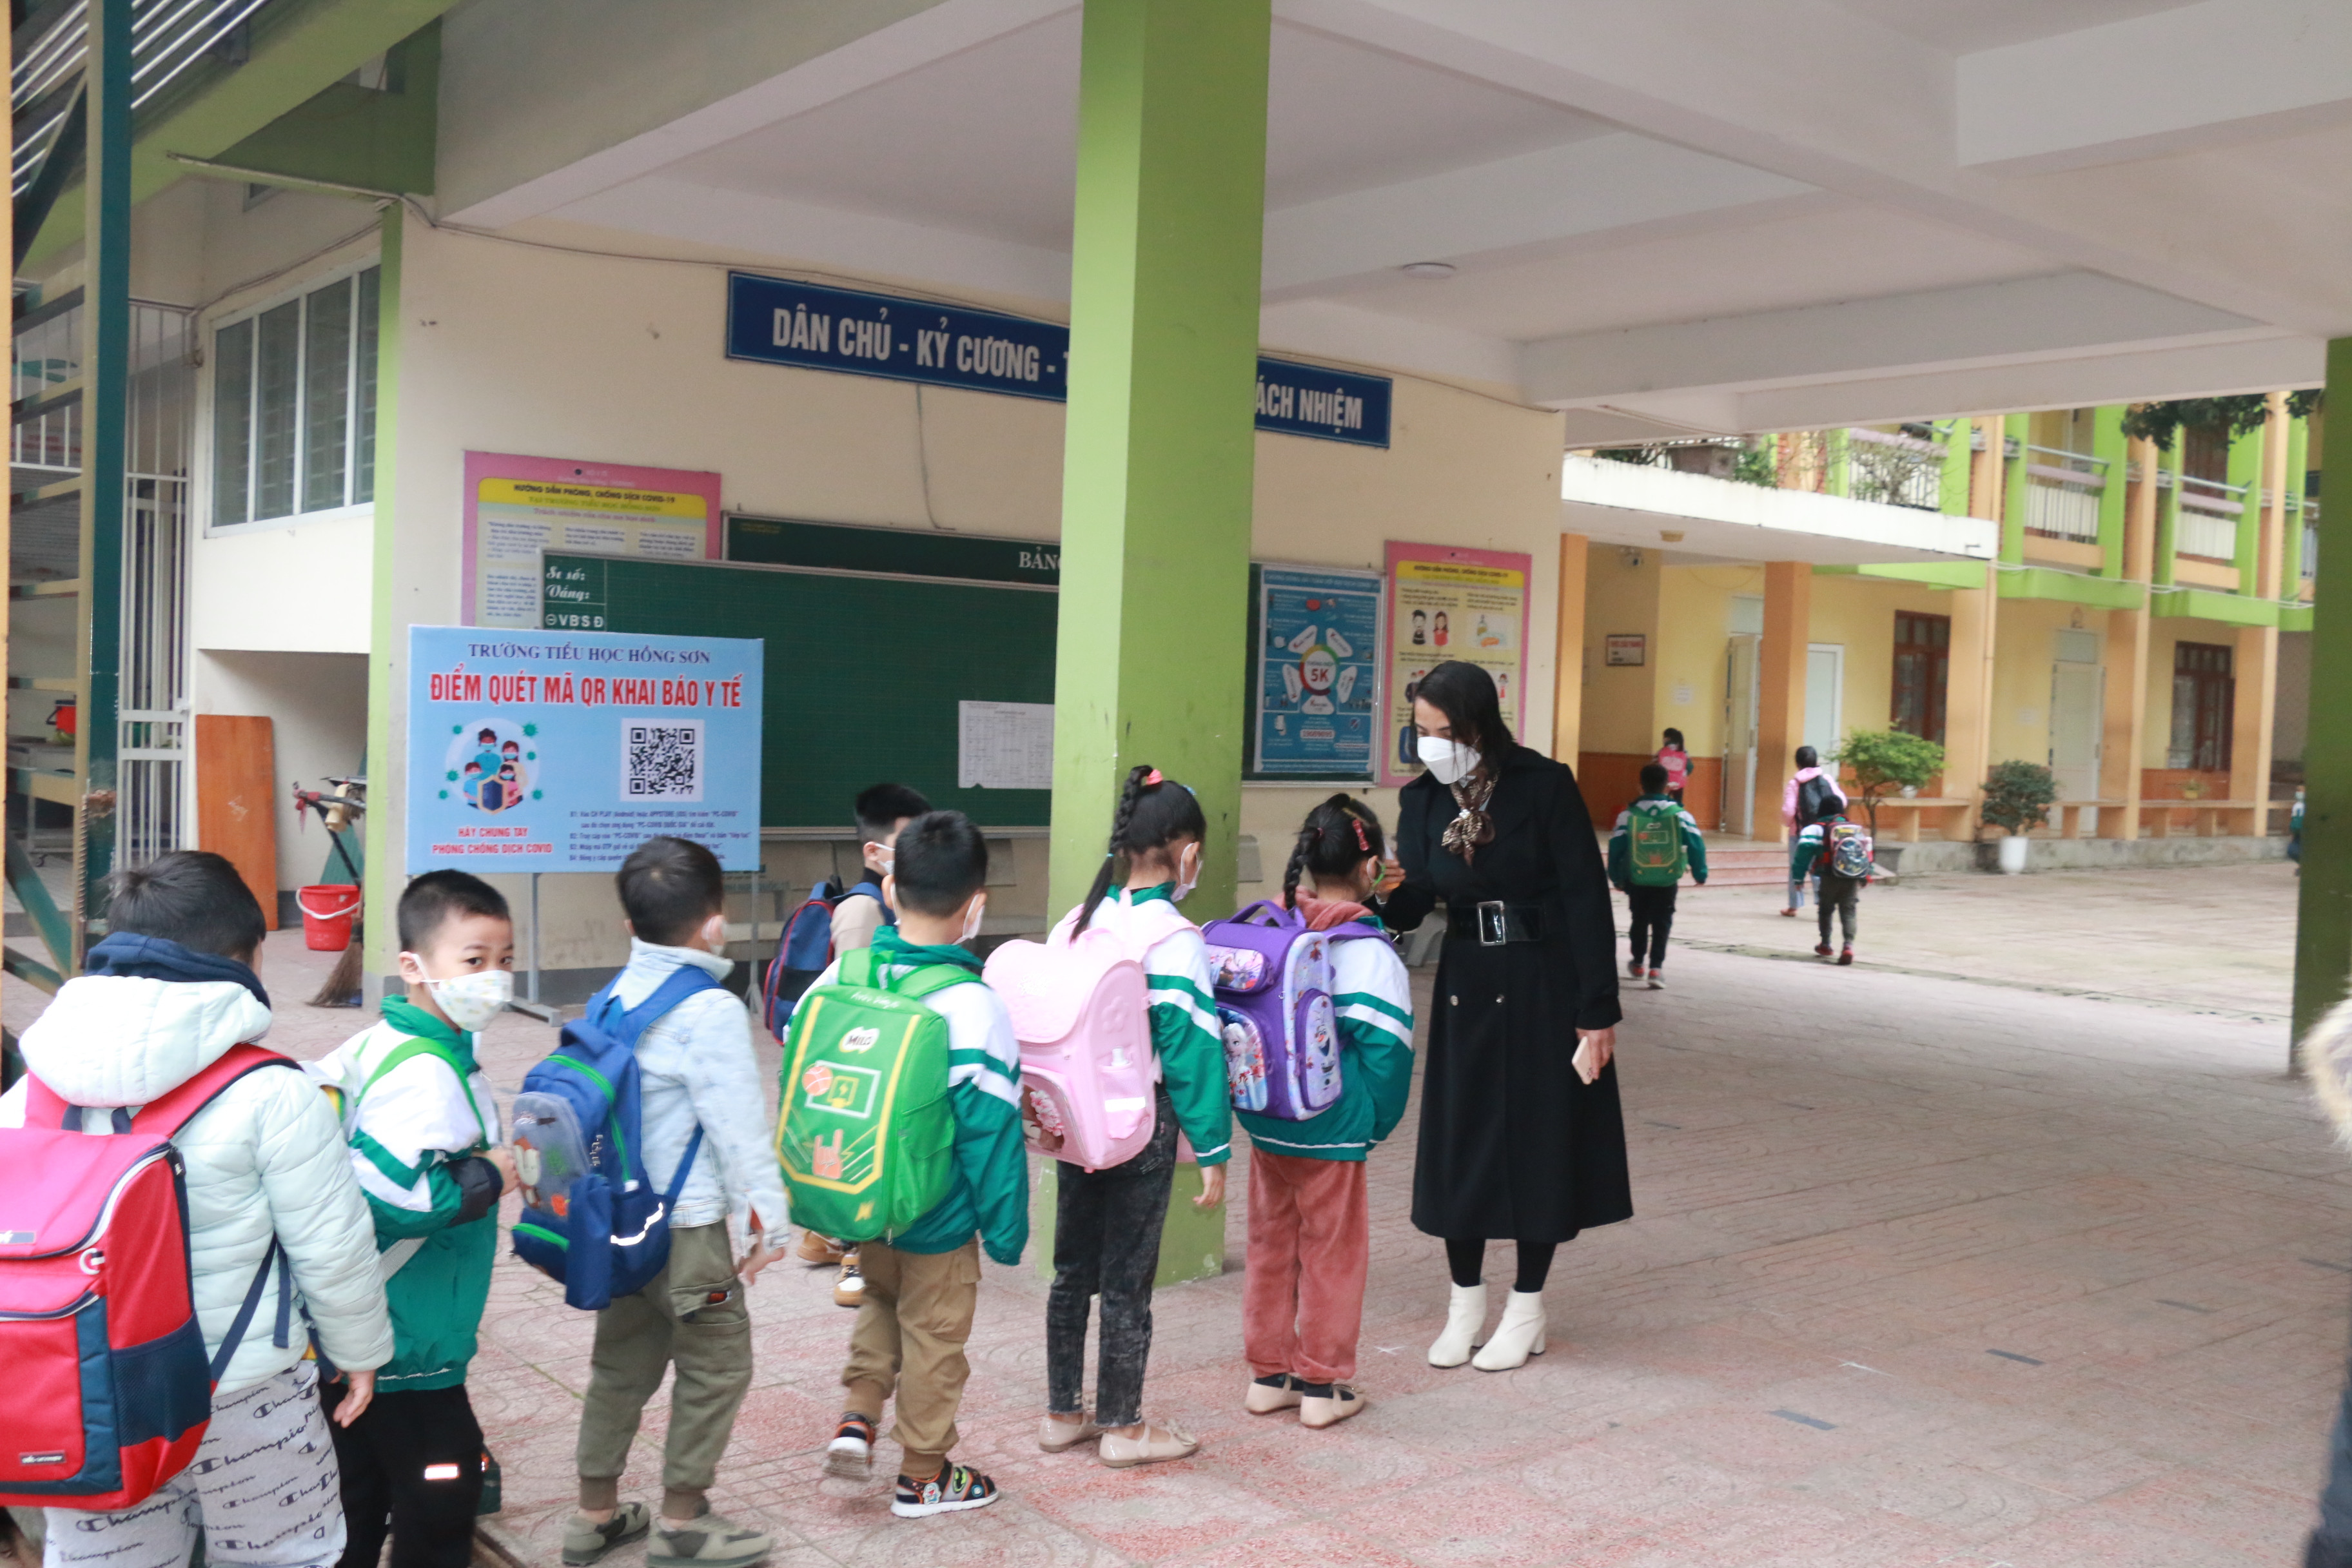 Trường Tiểu học Hồng Sơn kiểm tra thân nhiệt cho học sinh trong ngày đầu tiên trở lại trường